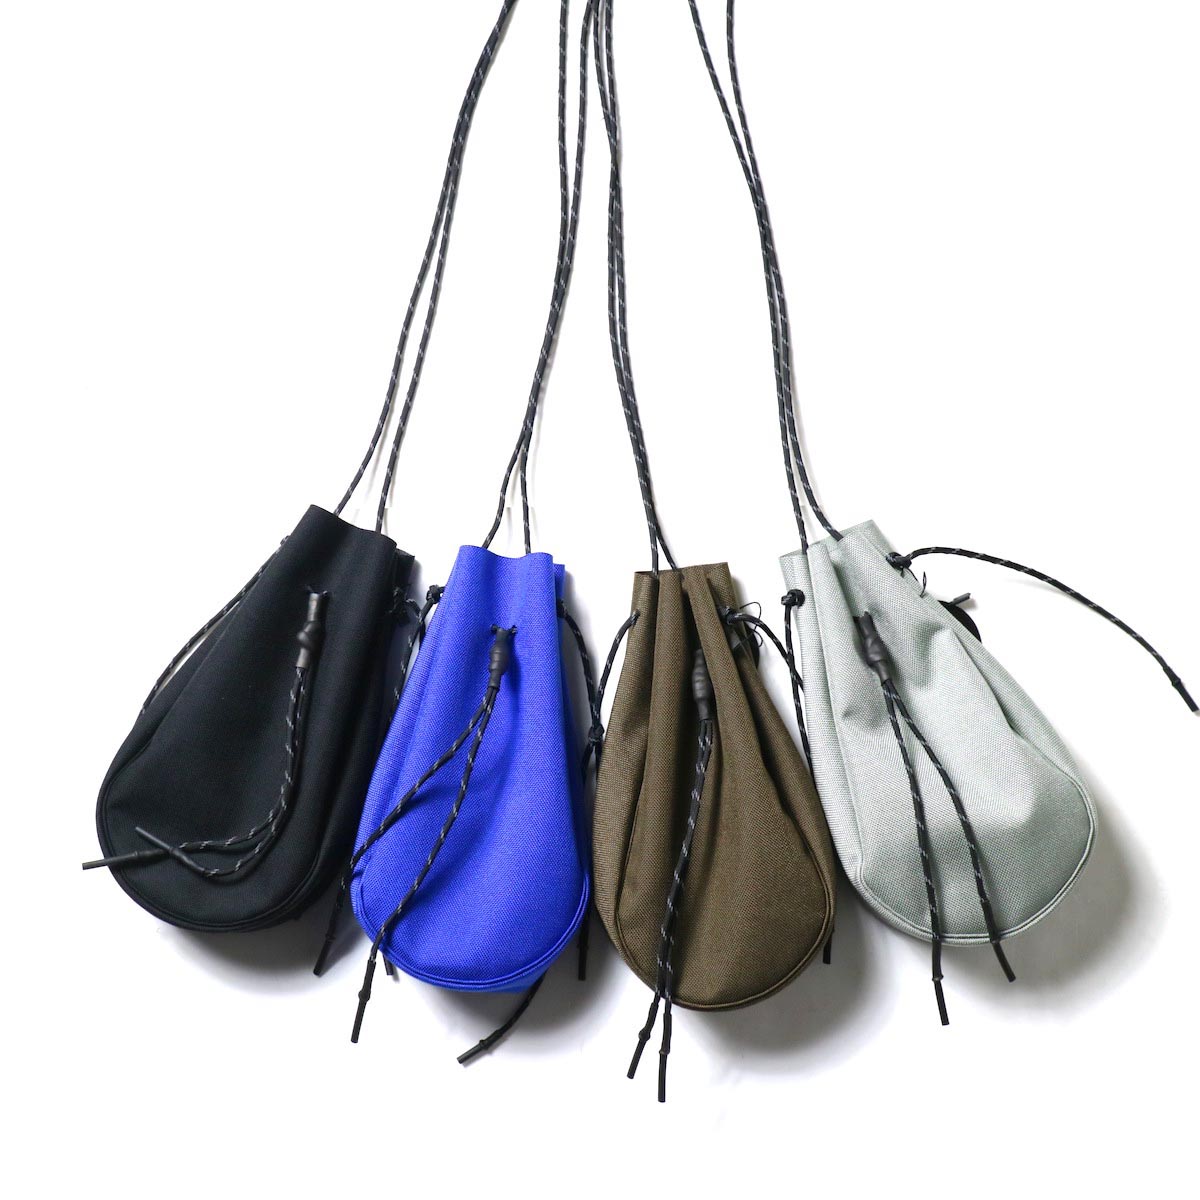 吉岡衣料店 / drawstring bag -S-. 4色